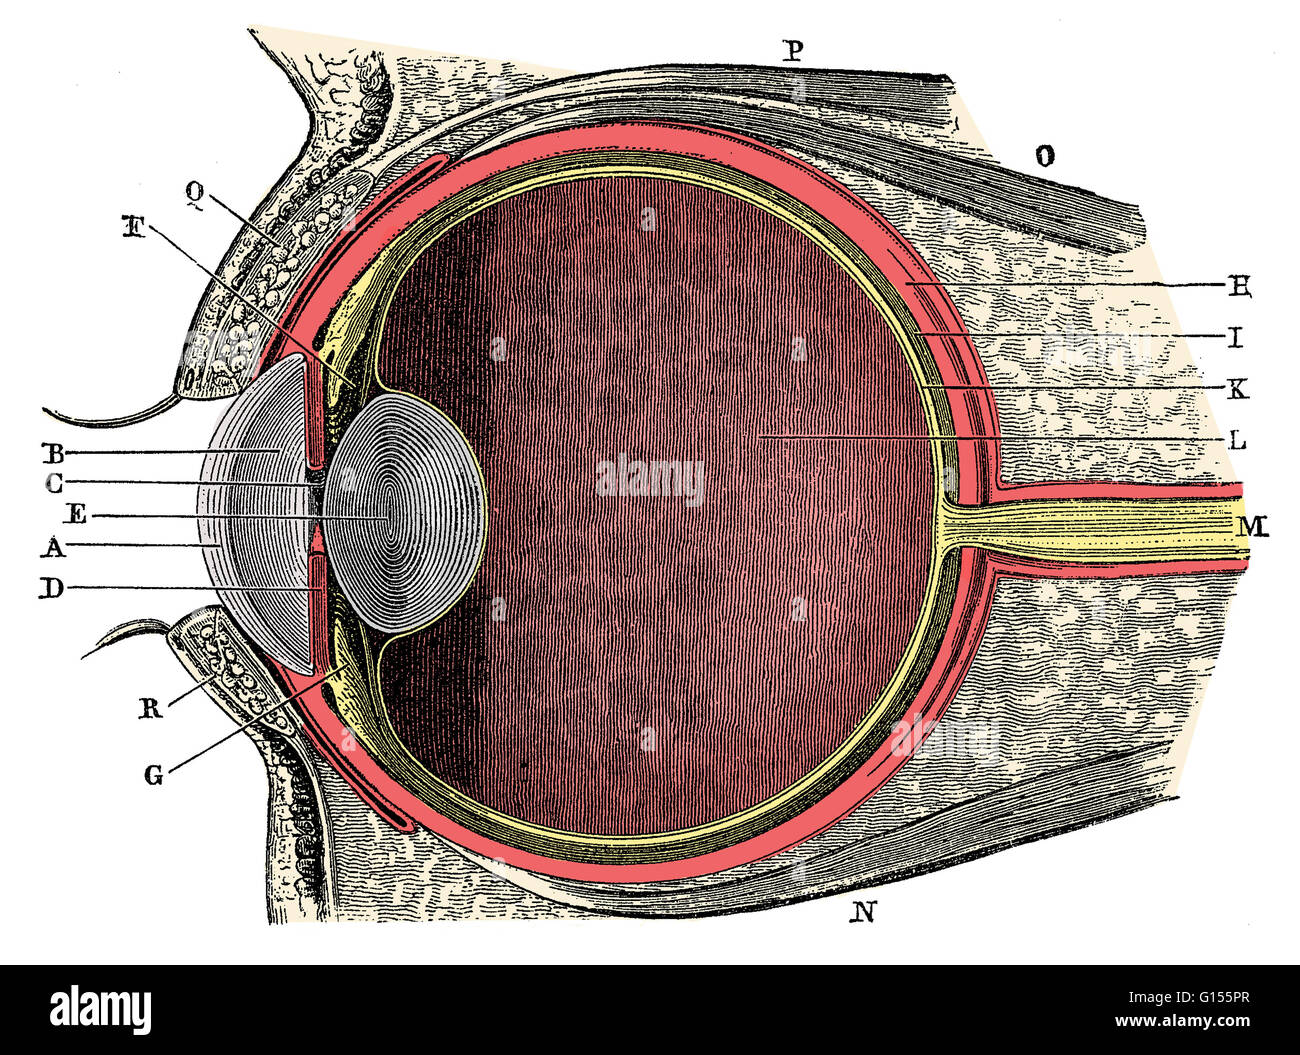 Anatomia di un occhio umano. Cornea (A), l'umor acqueo (B), iris (C), allievo (D), la lente (E), legamento sospensivo (F), corpo ciliare (G), la sclera (H), coroide (MI), la retina (K), vitreo (L), del nervo ottico (M). Si tratta di una storica illustrazione anatomica da Foto Stock